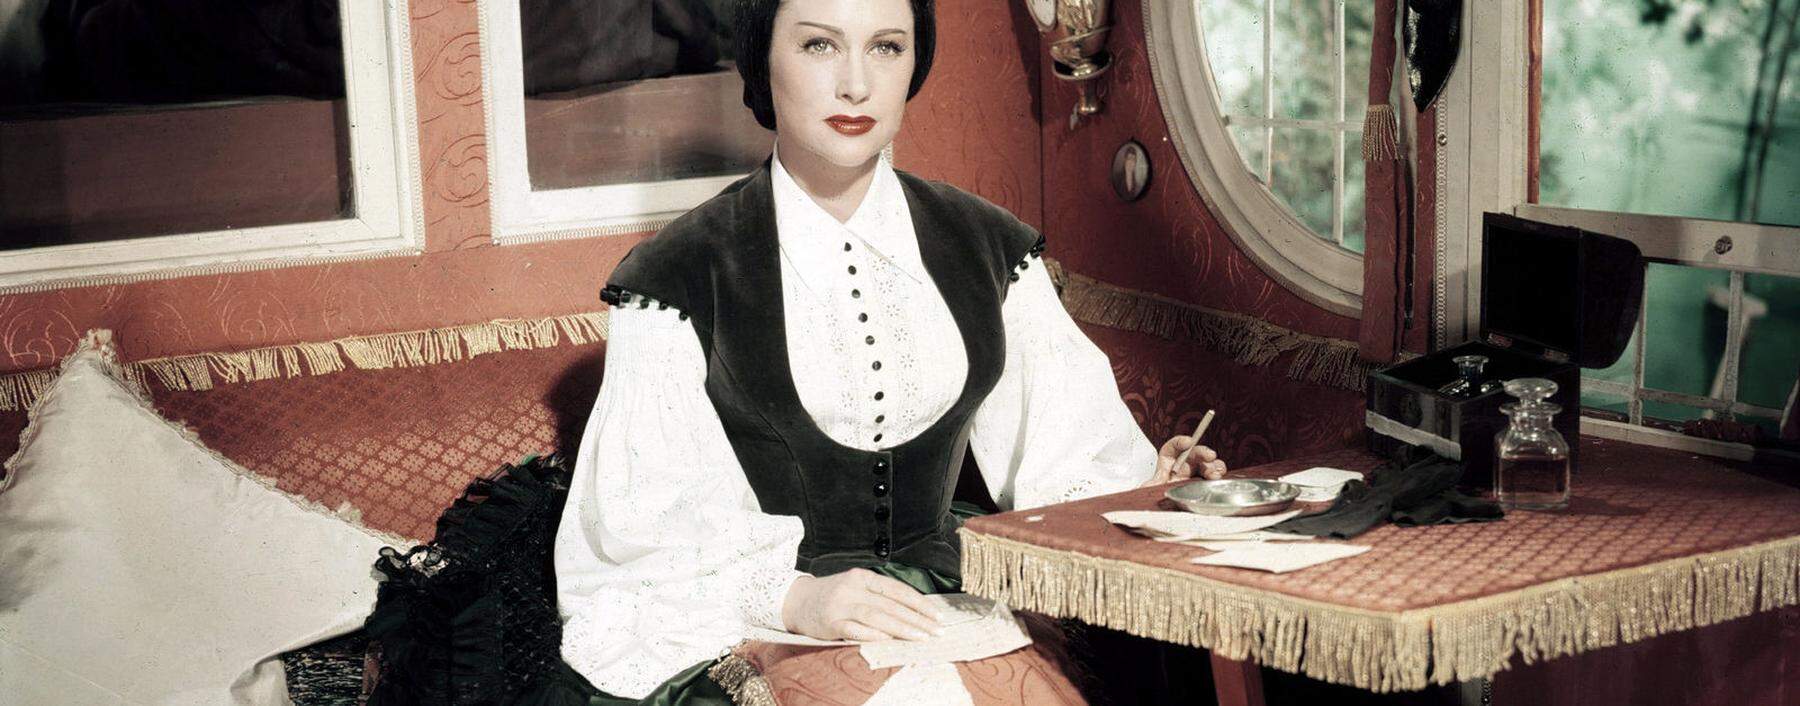 Das Leben von Lola Montez wurde auch verfilmt, unter anderem 1955 von Max Ophüls. Darstellerin war Martine Carol.